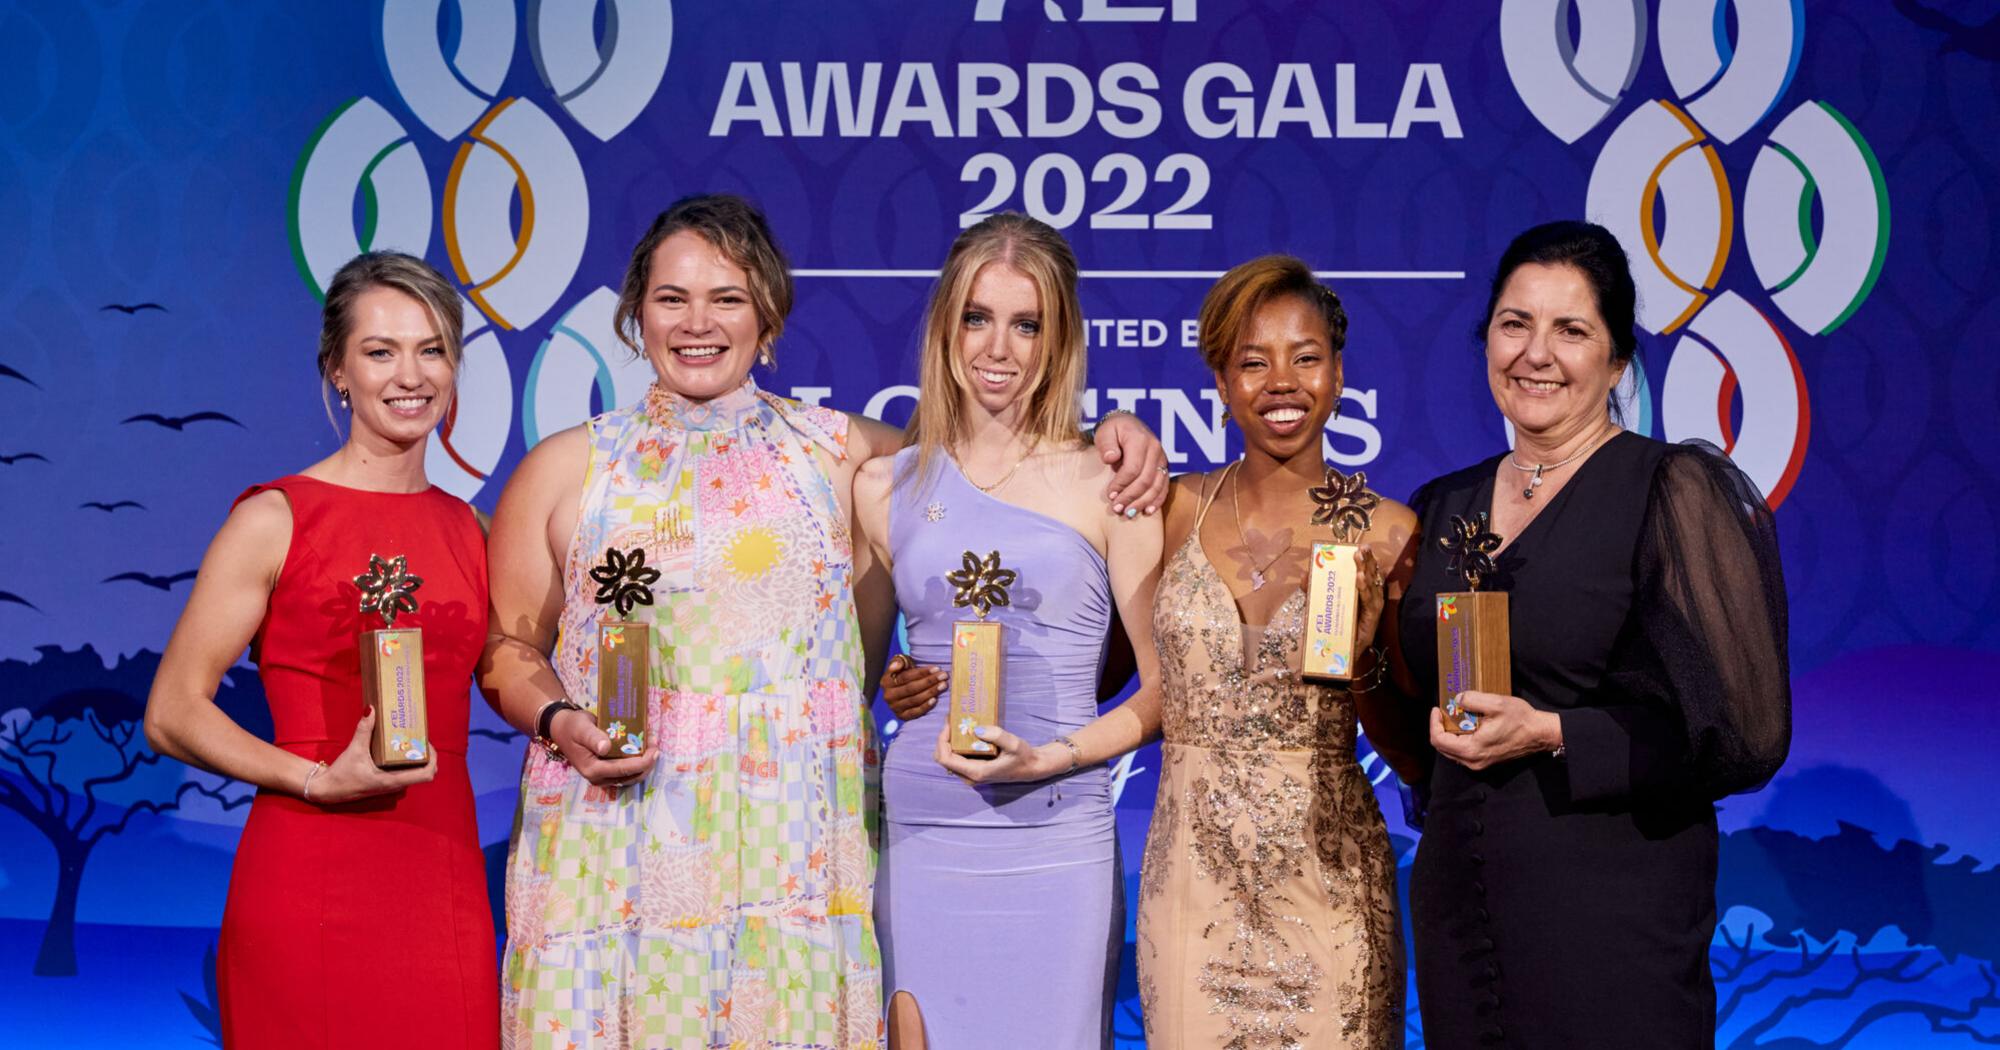 FEI Awards 2022 celebrate all female winners